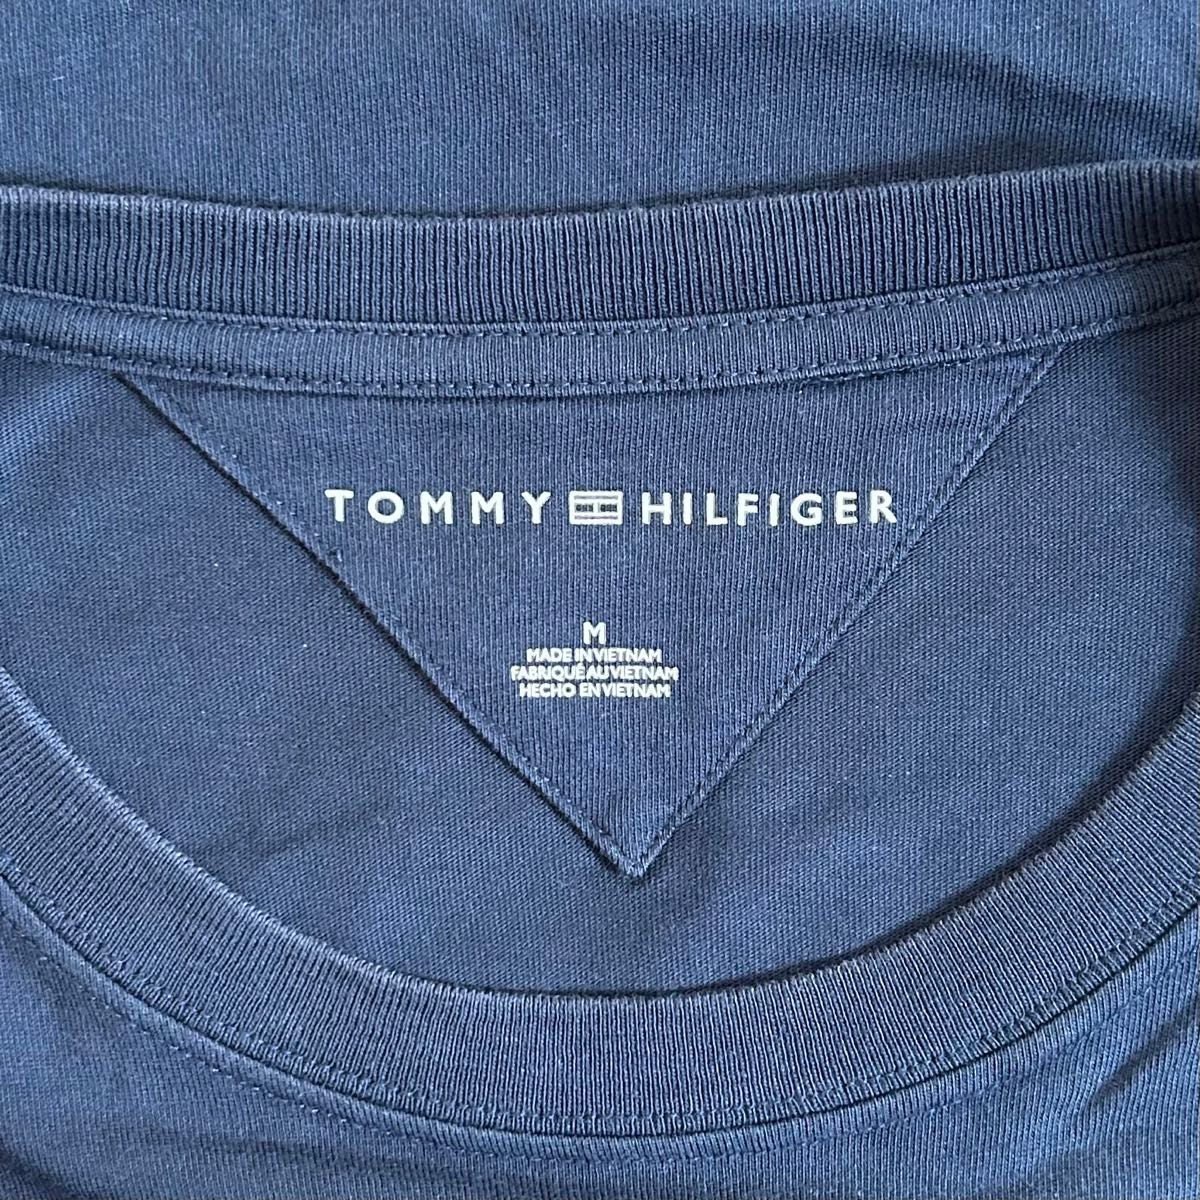 【美品】トミーヒルフィガー TOMMY HILFIGER 長袖 Tシャツ ロンT Mサイズ ネイビー